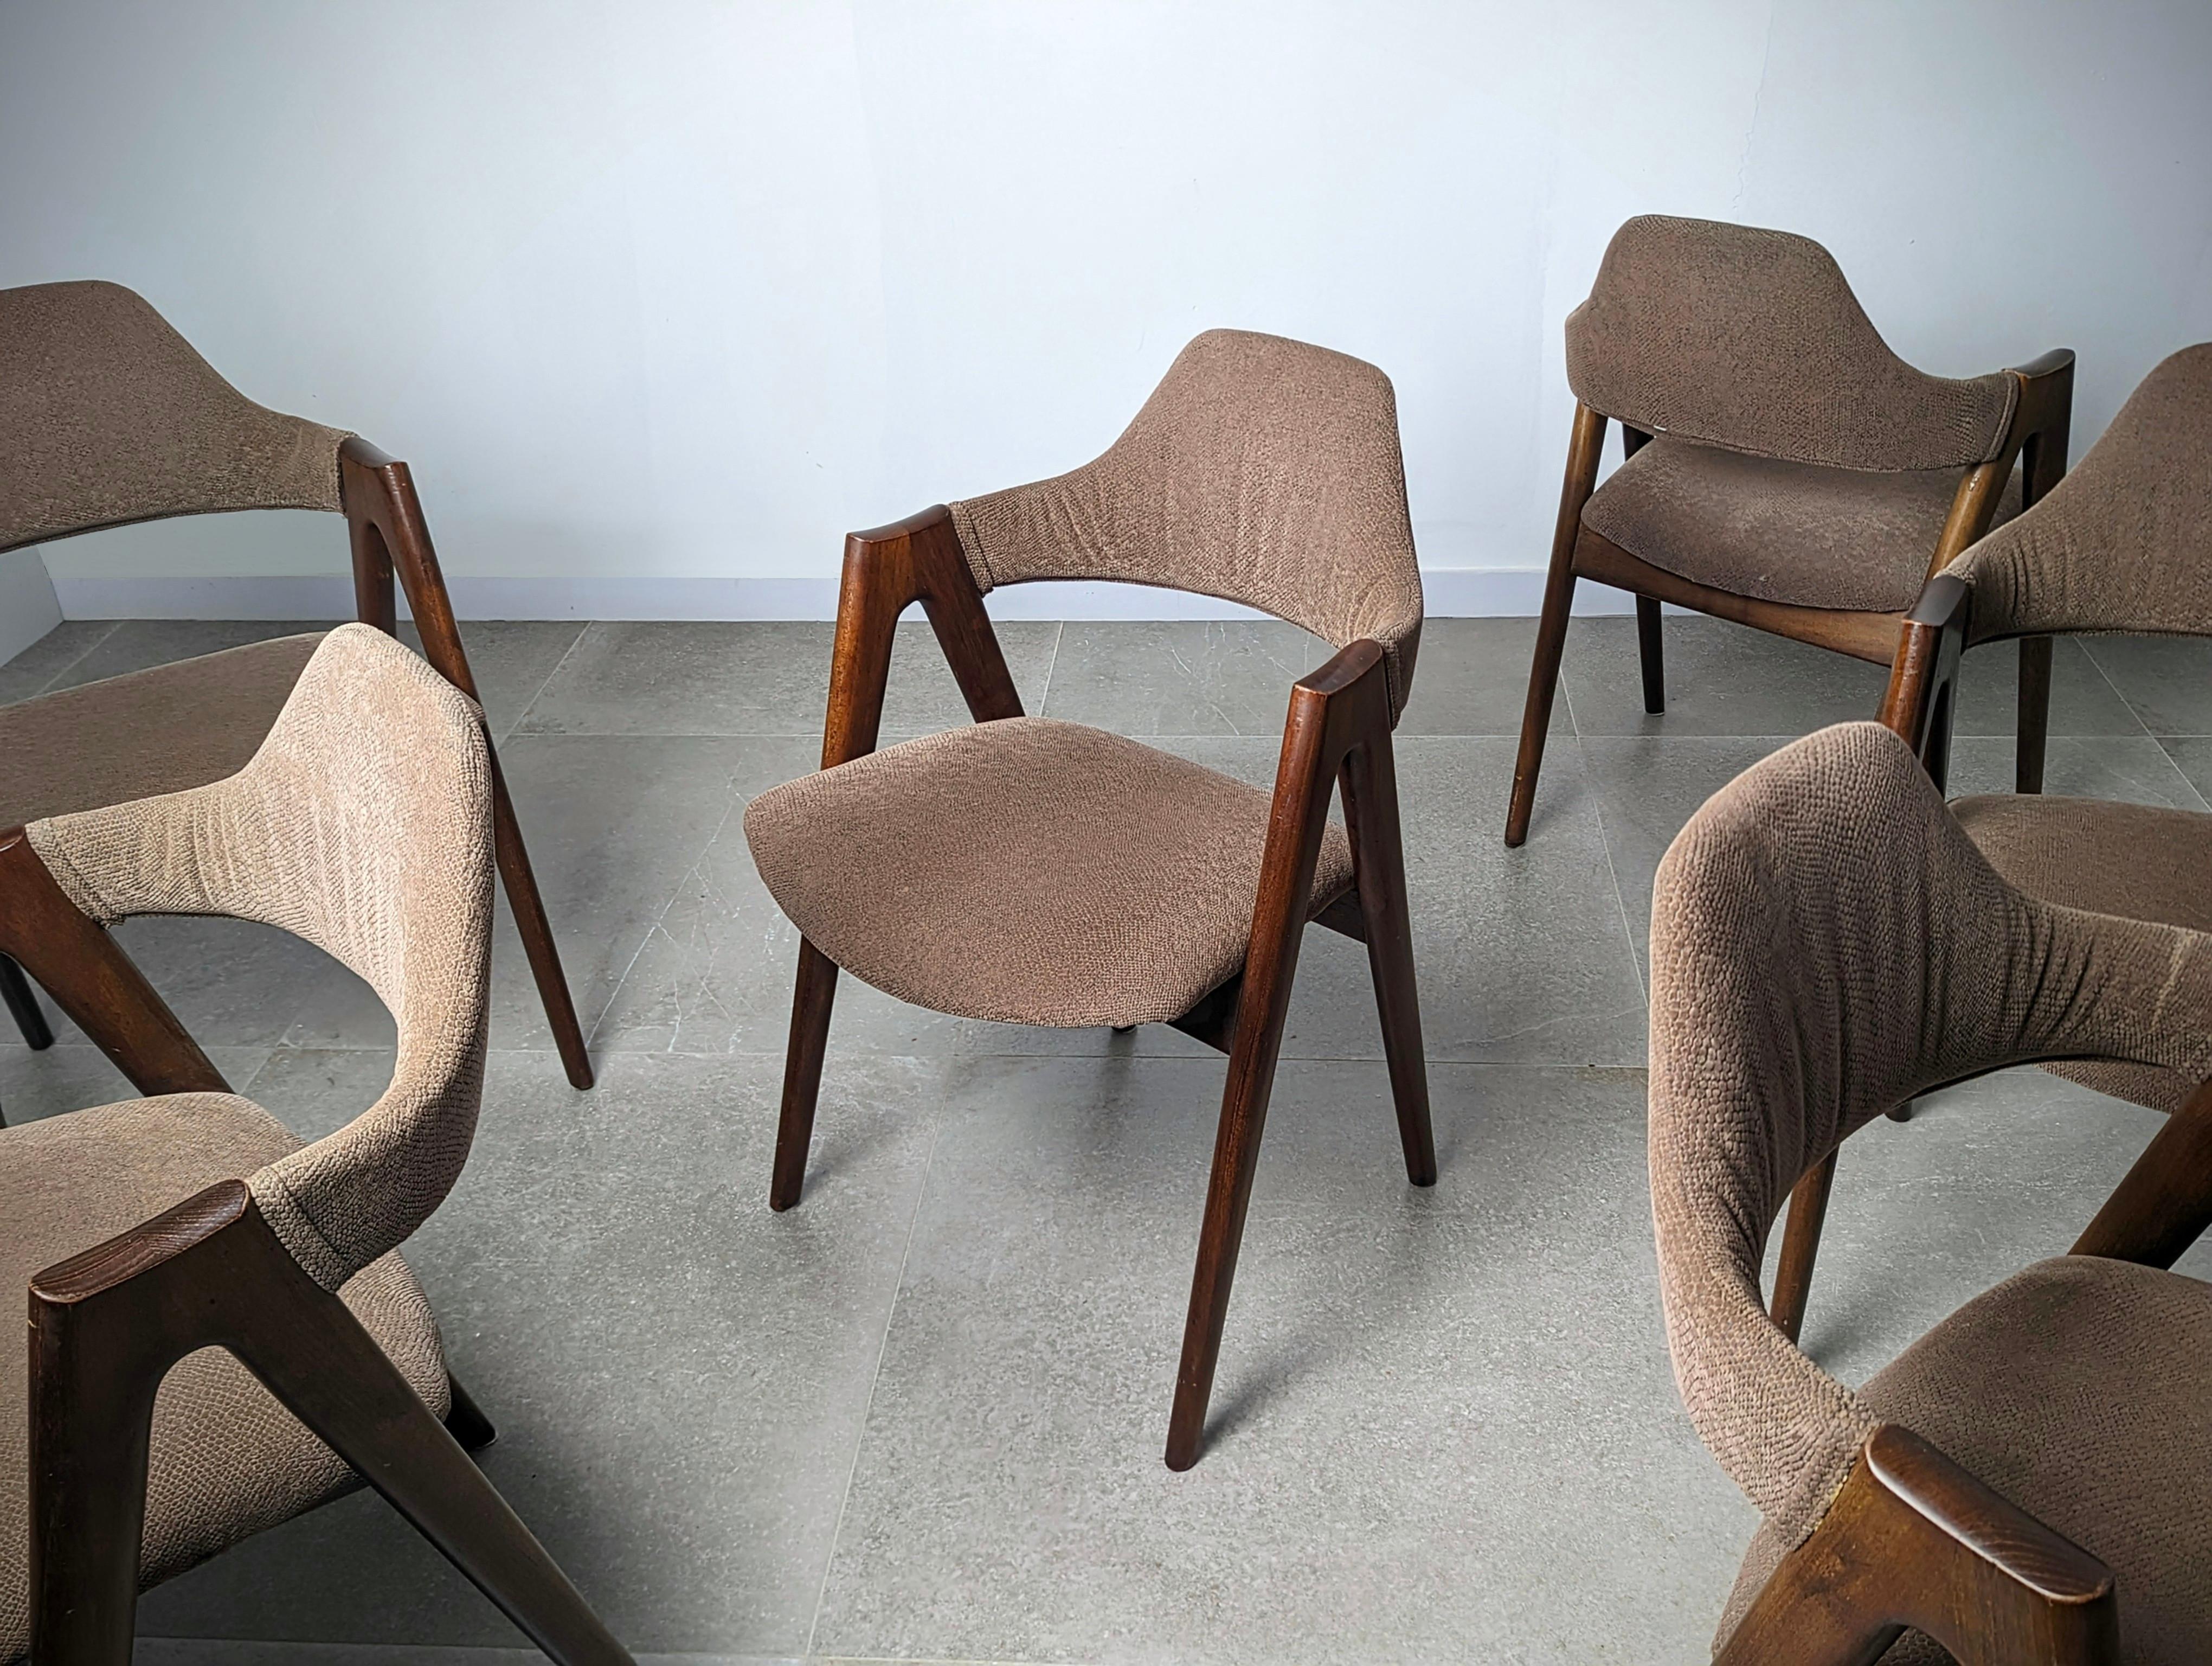 Wunderschönes Set von 'Compass' Stühlen, entworfen von Kai Kristiansen aus massivem Teakholz.

Sechs Einheiten verfügbar.